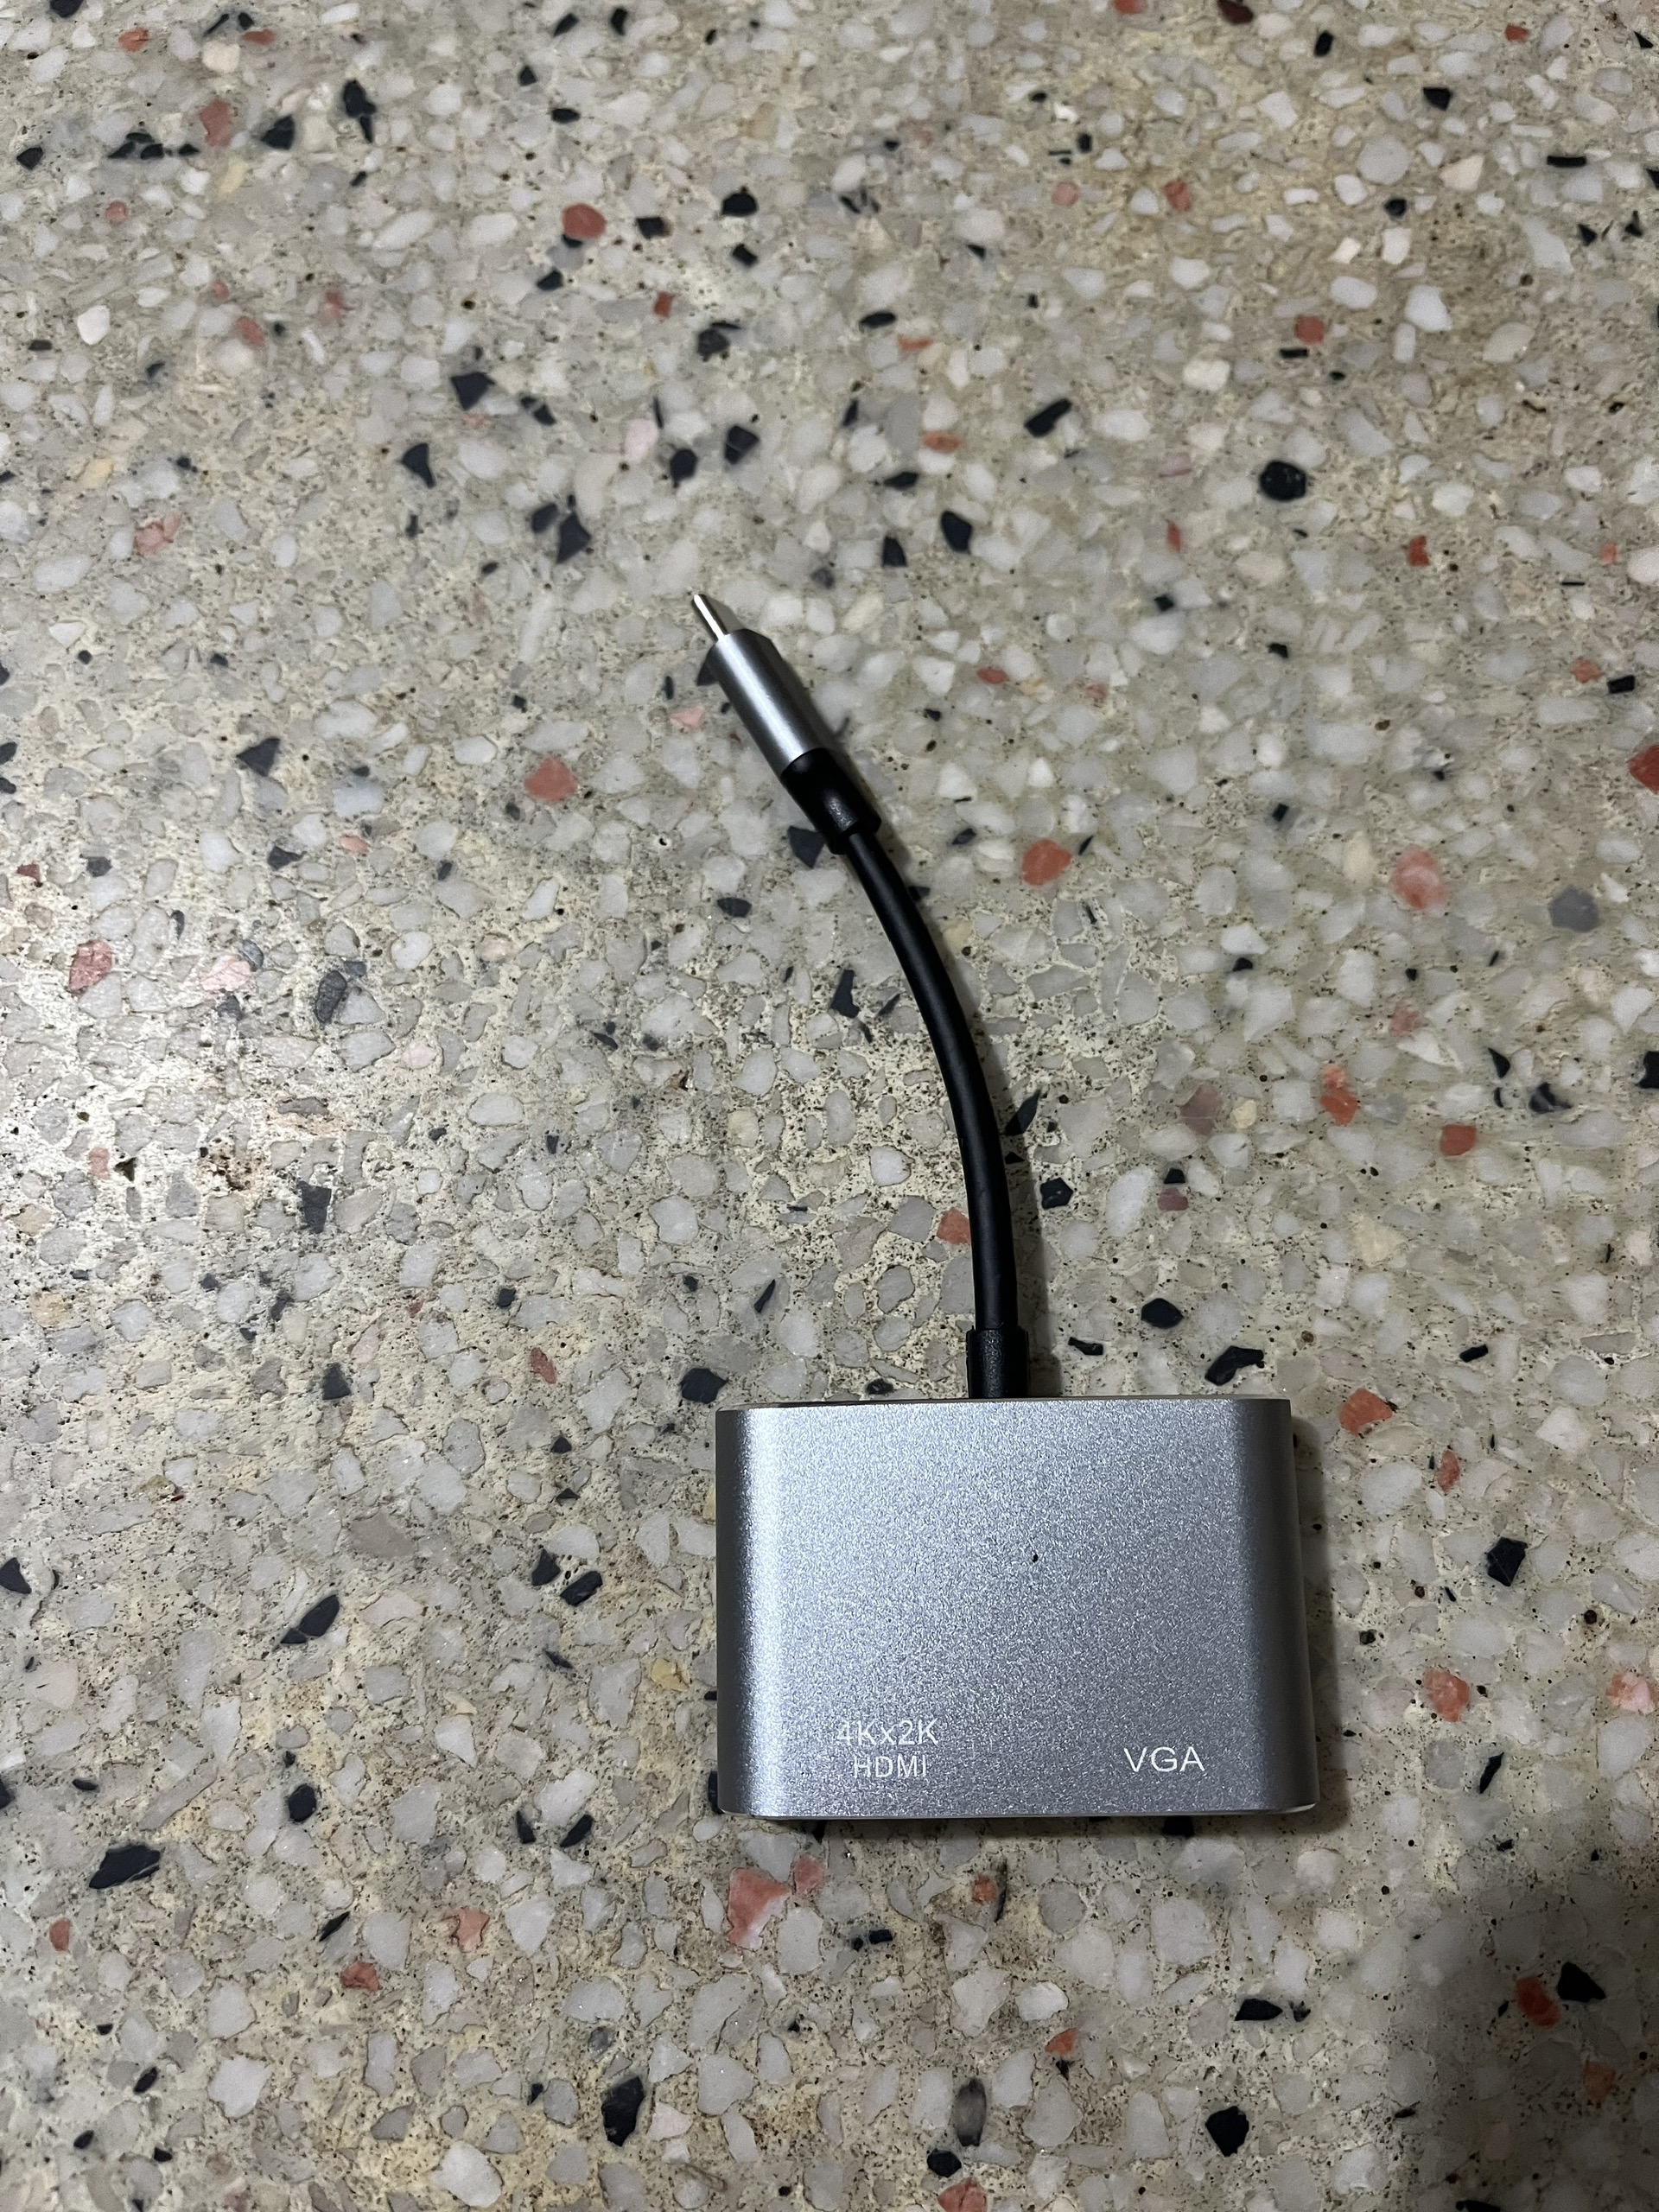 Cáp Chuyển Đổi USB TYPE-C Sang HDMI Và VGA